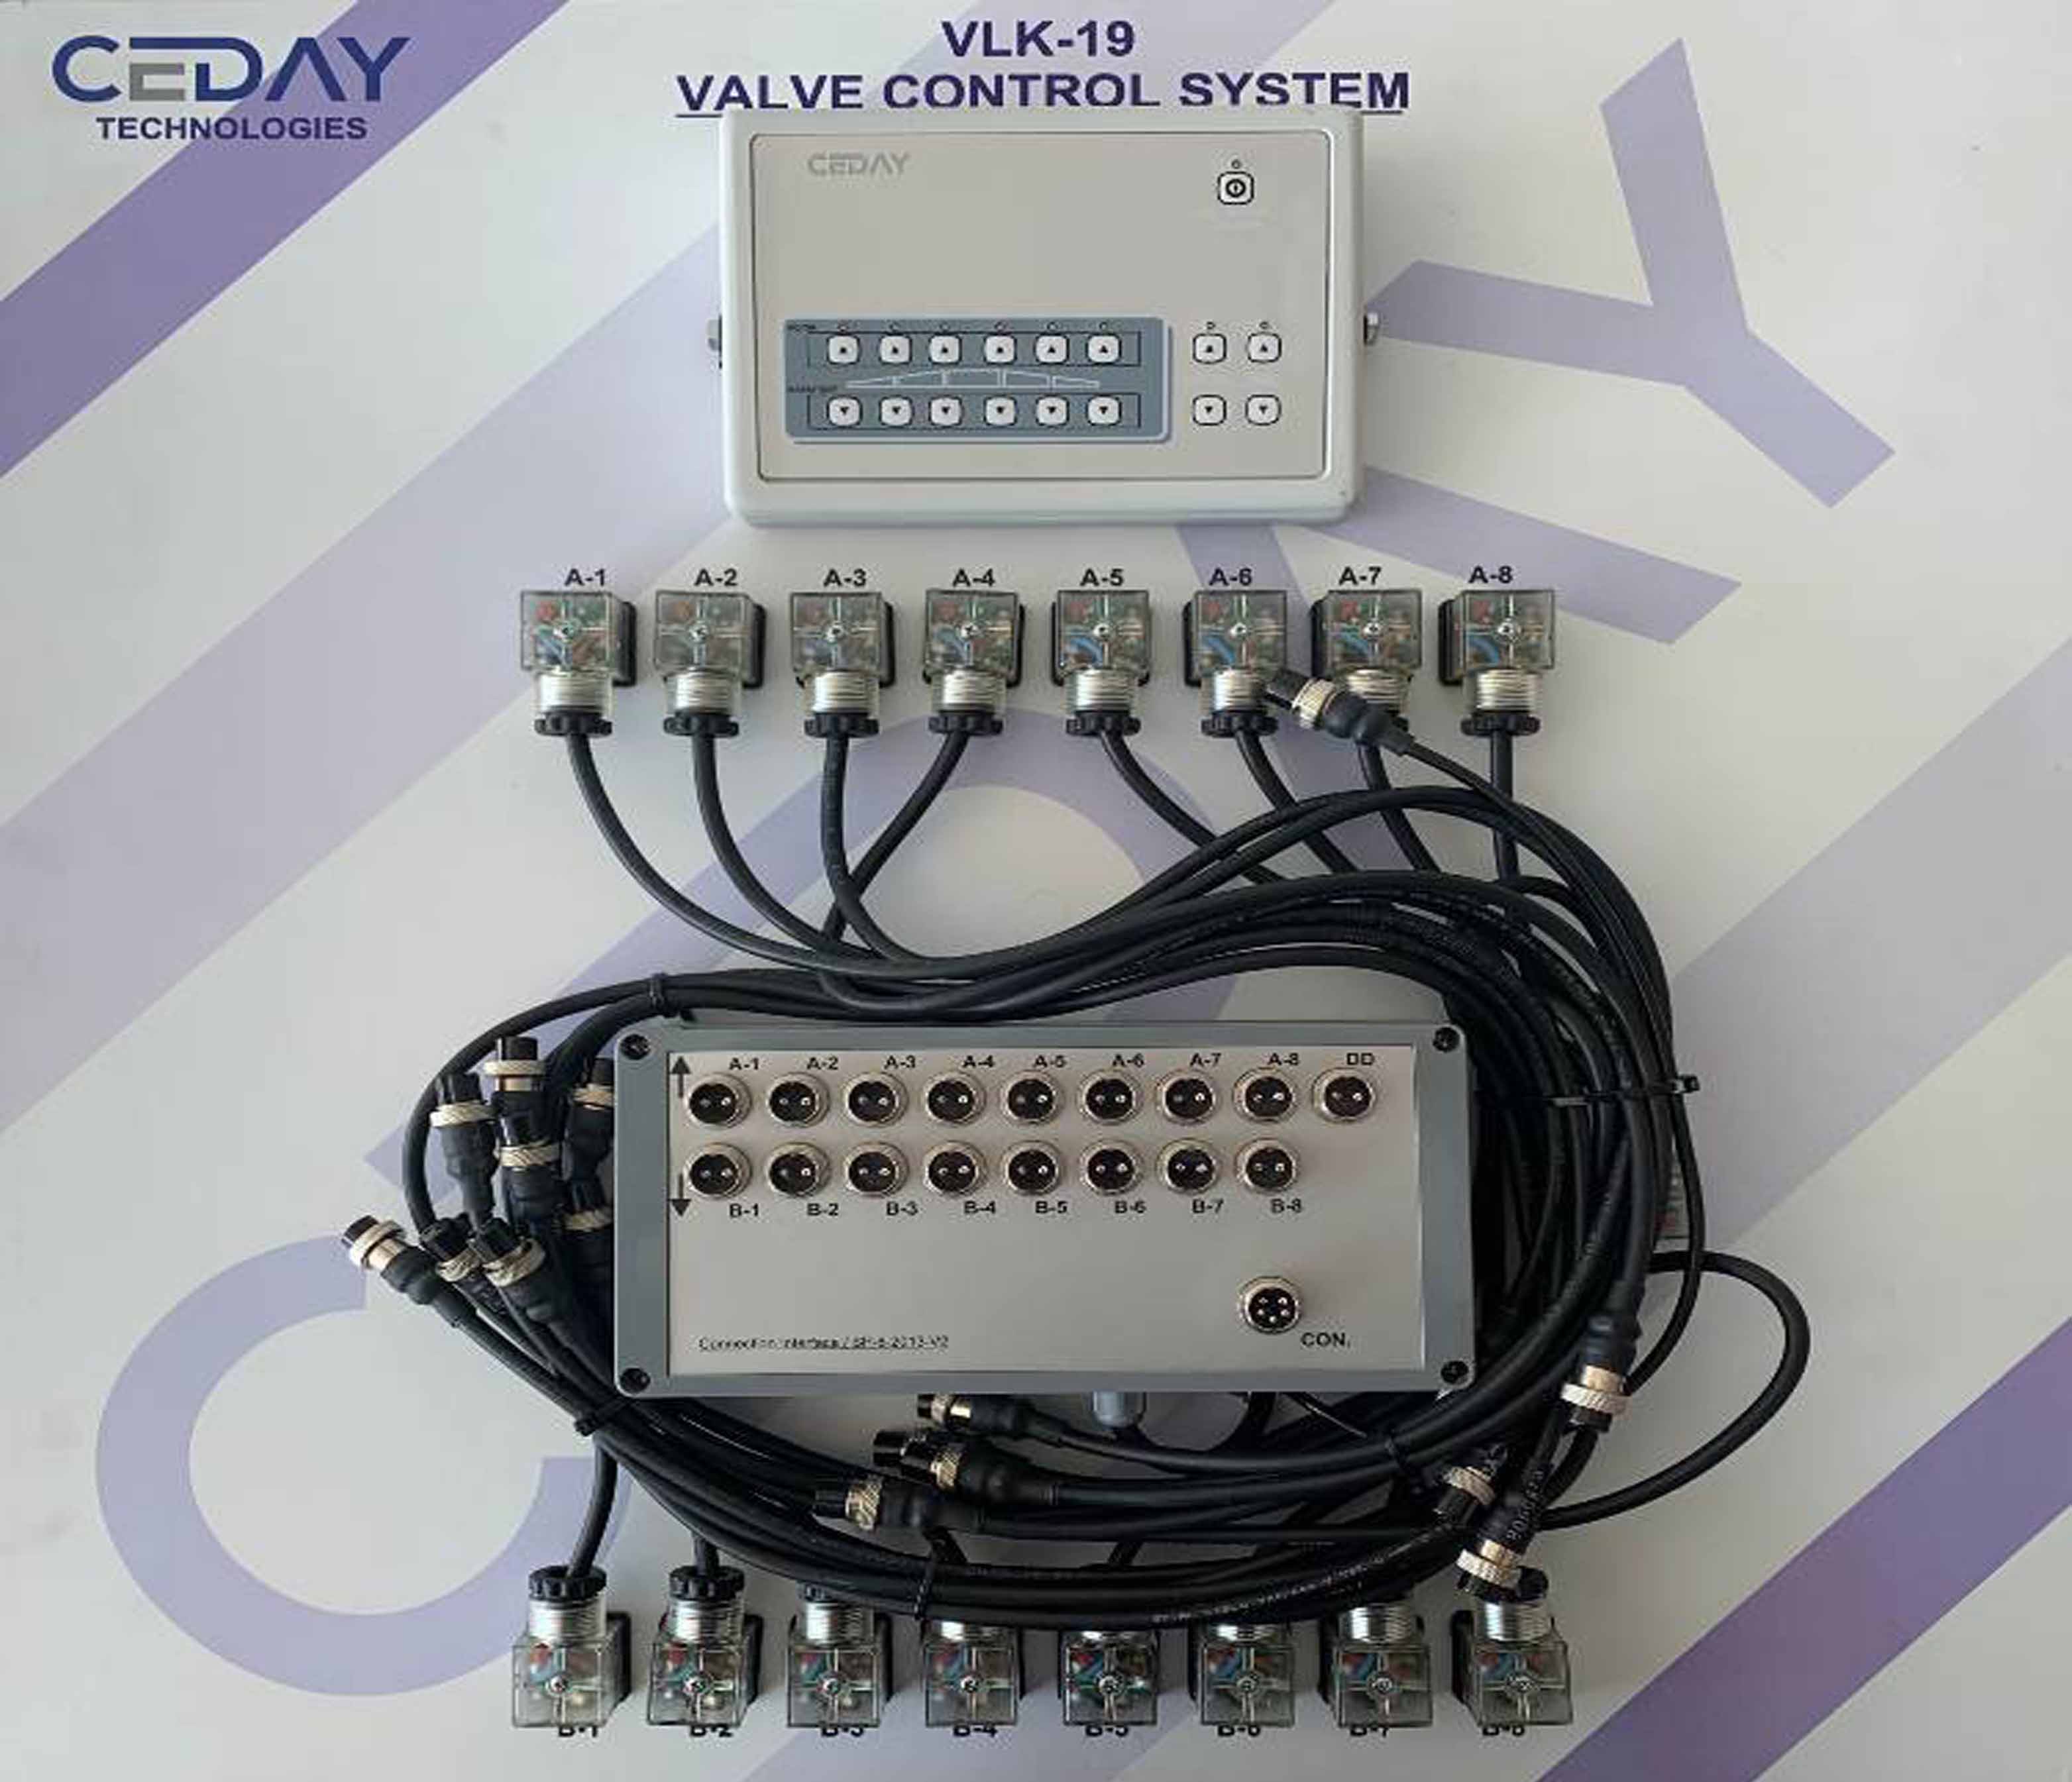 Spraying - VLK-19 Valve Control